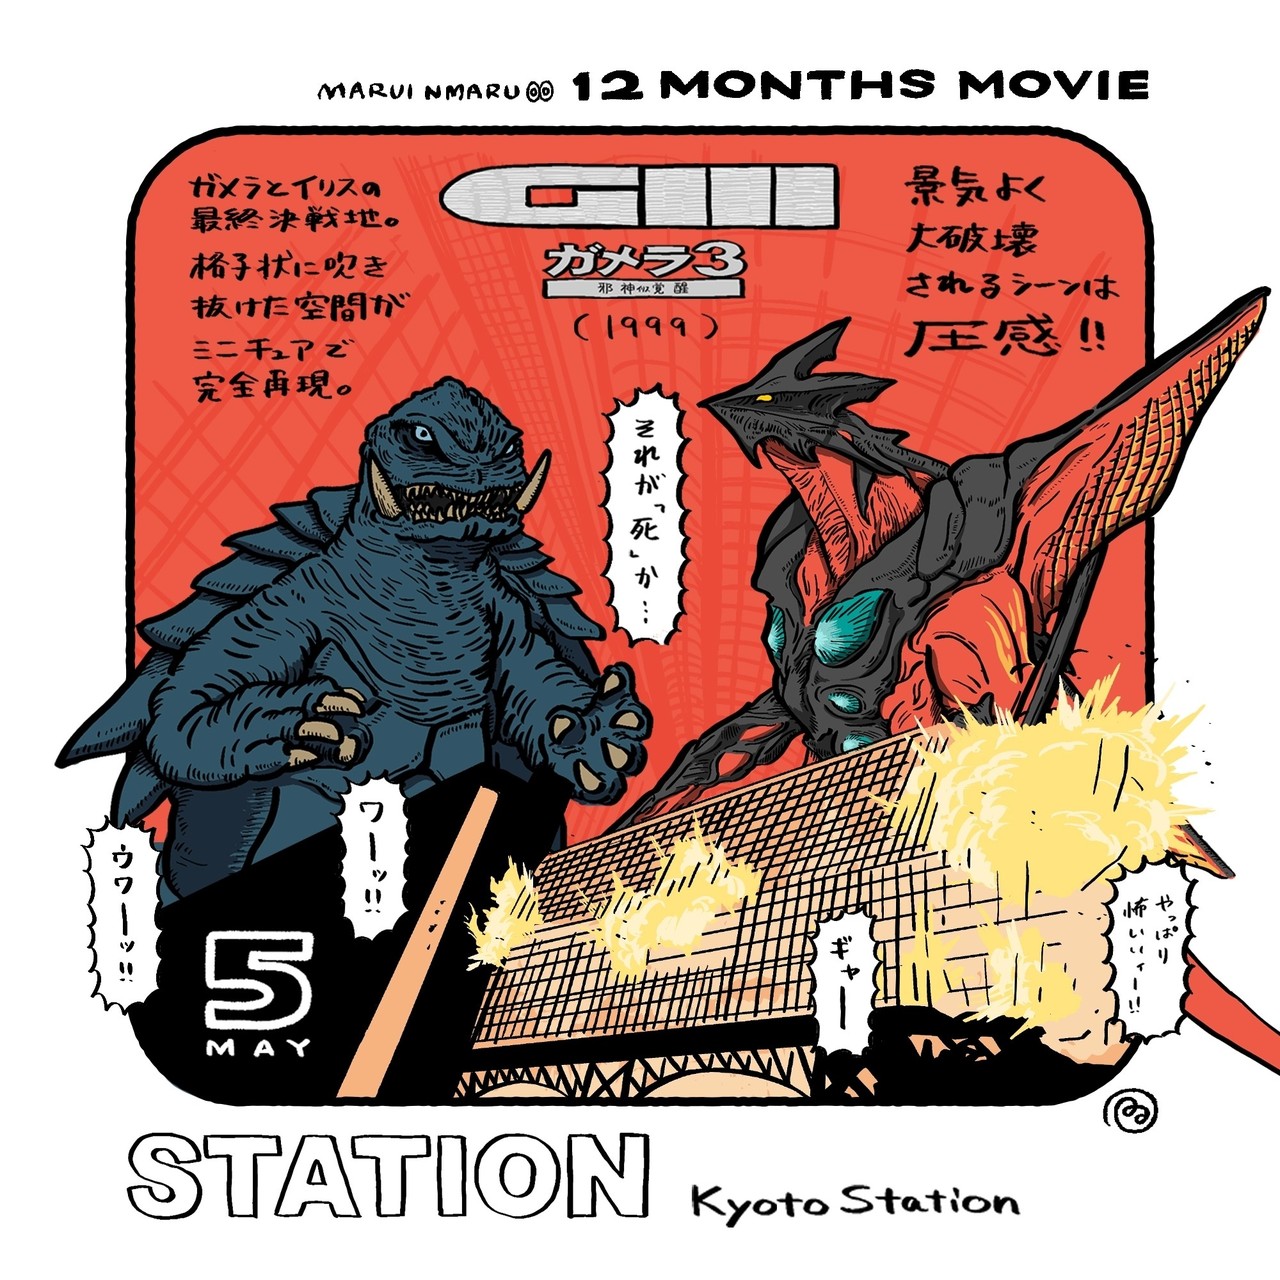 駅が印象的な映画 May 12months Movie 12months Movie Note